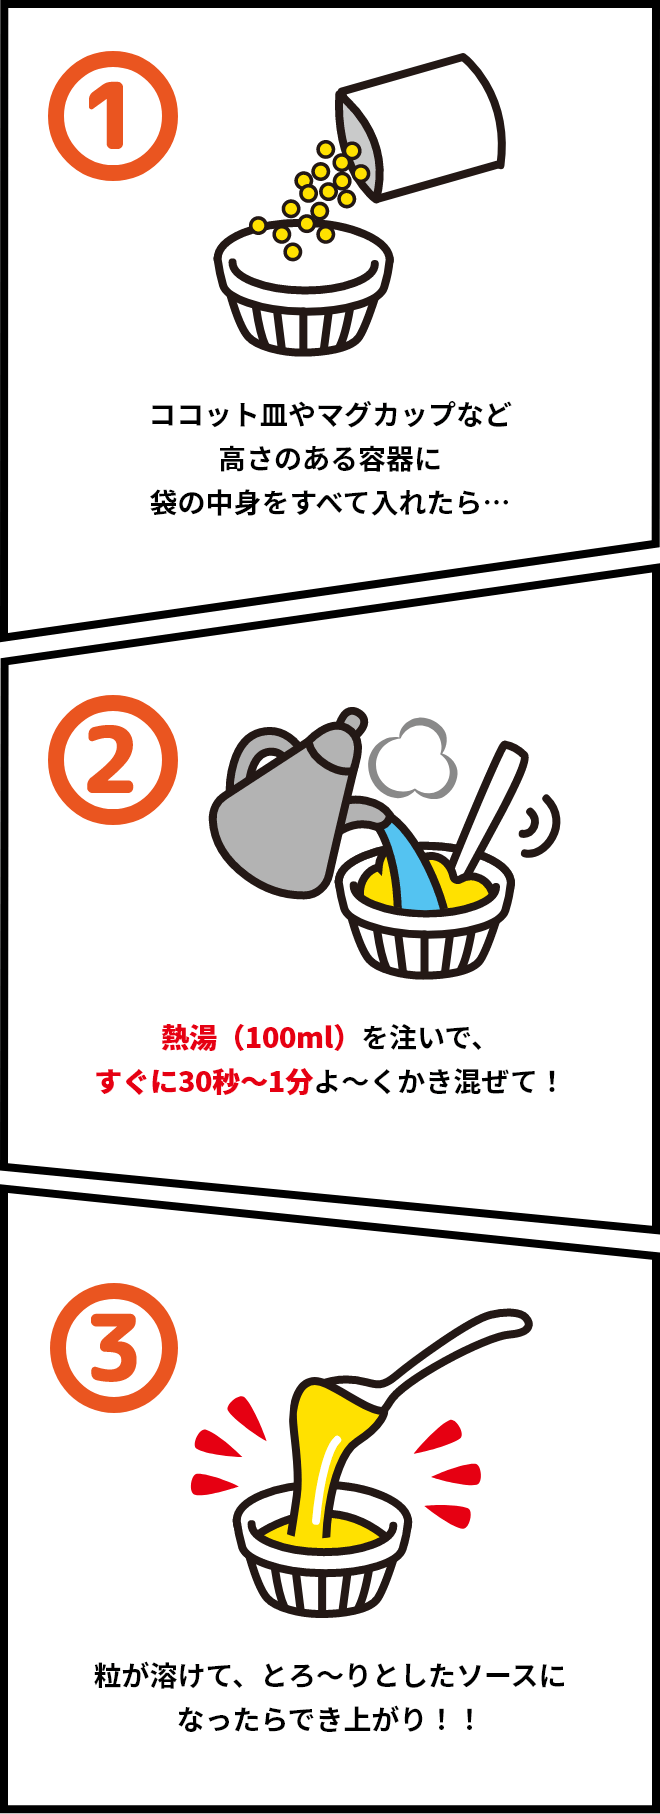 1.ココット皿やマグカップなど高さのある容器に袋の中身をすべて入れたら… 2.熱湯(100ml)を注いで、すぐに30秒～1分よ～くかき混ぜて! 3.粒が溶けて、とろ～りとしたソースになったらでき上がり!!